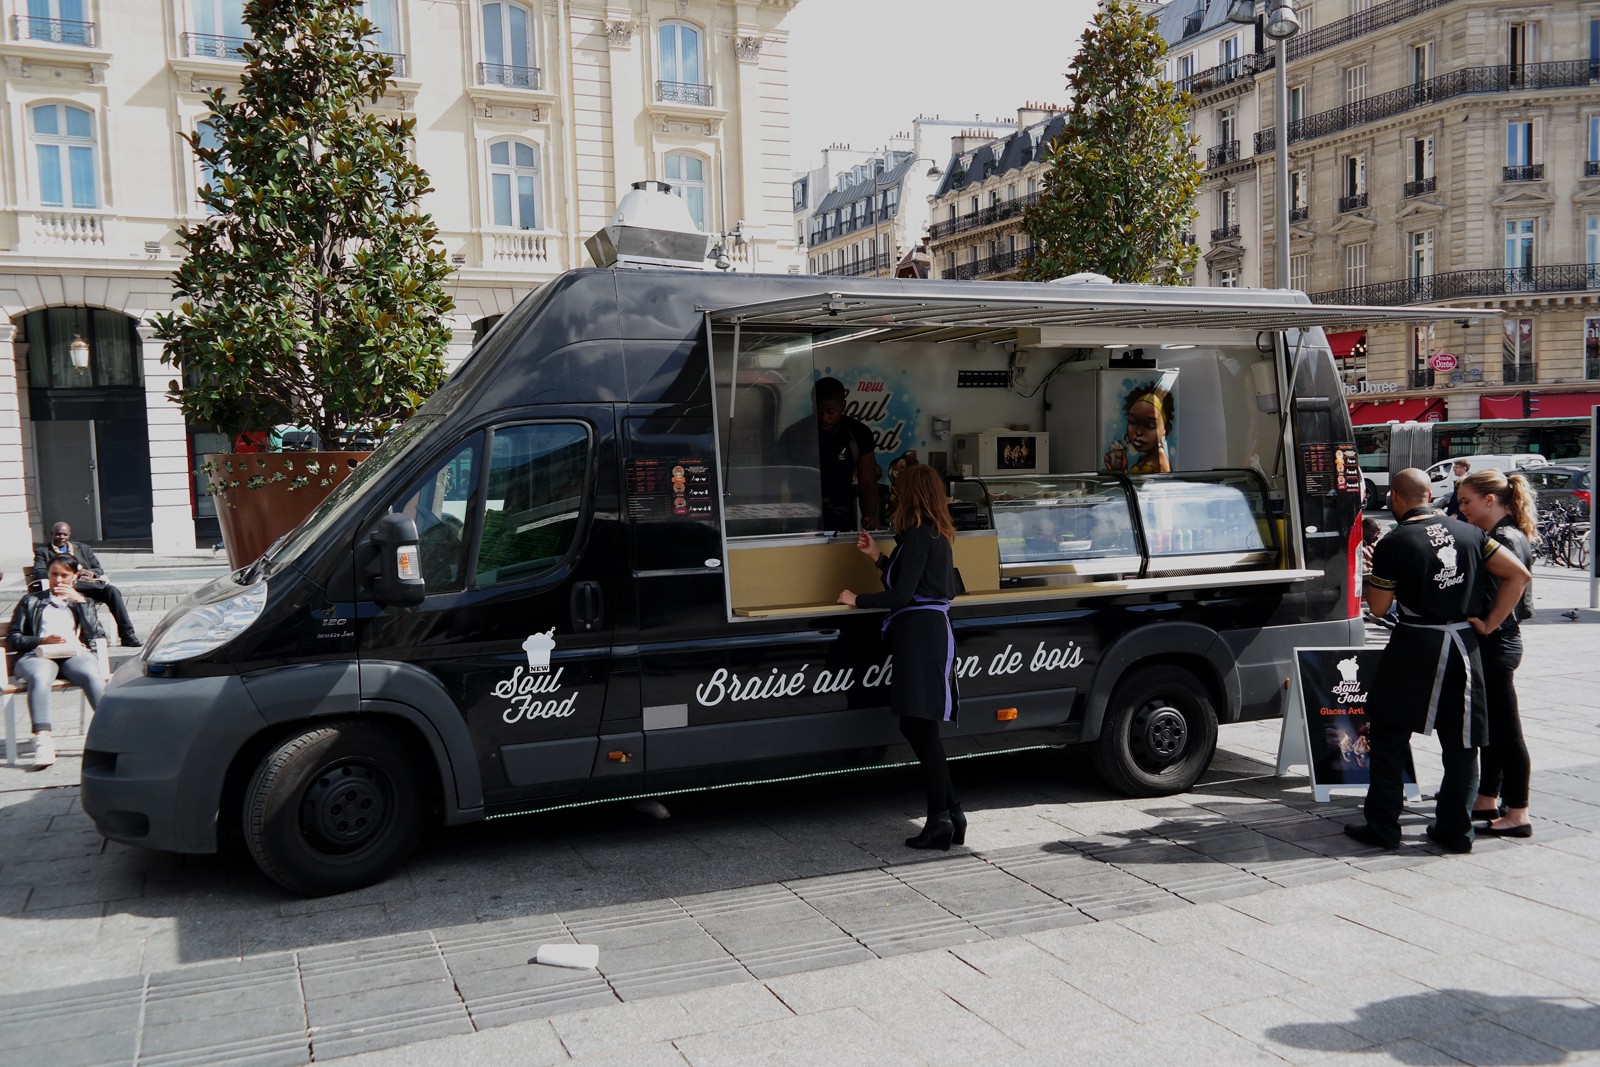 New Soul Food truck by Rudy Laine camion graffé pour cuisine afro-disiaque braisée au feu de bois photo united states of paris blog